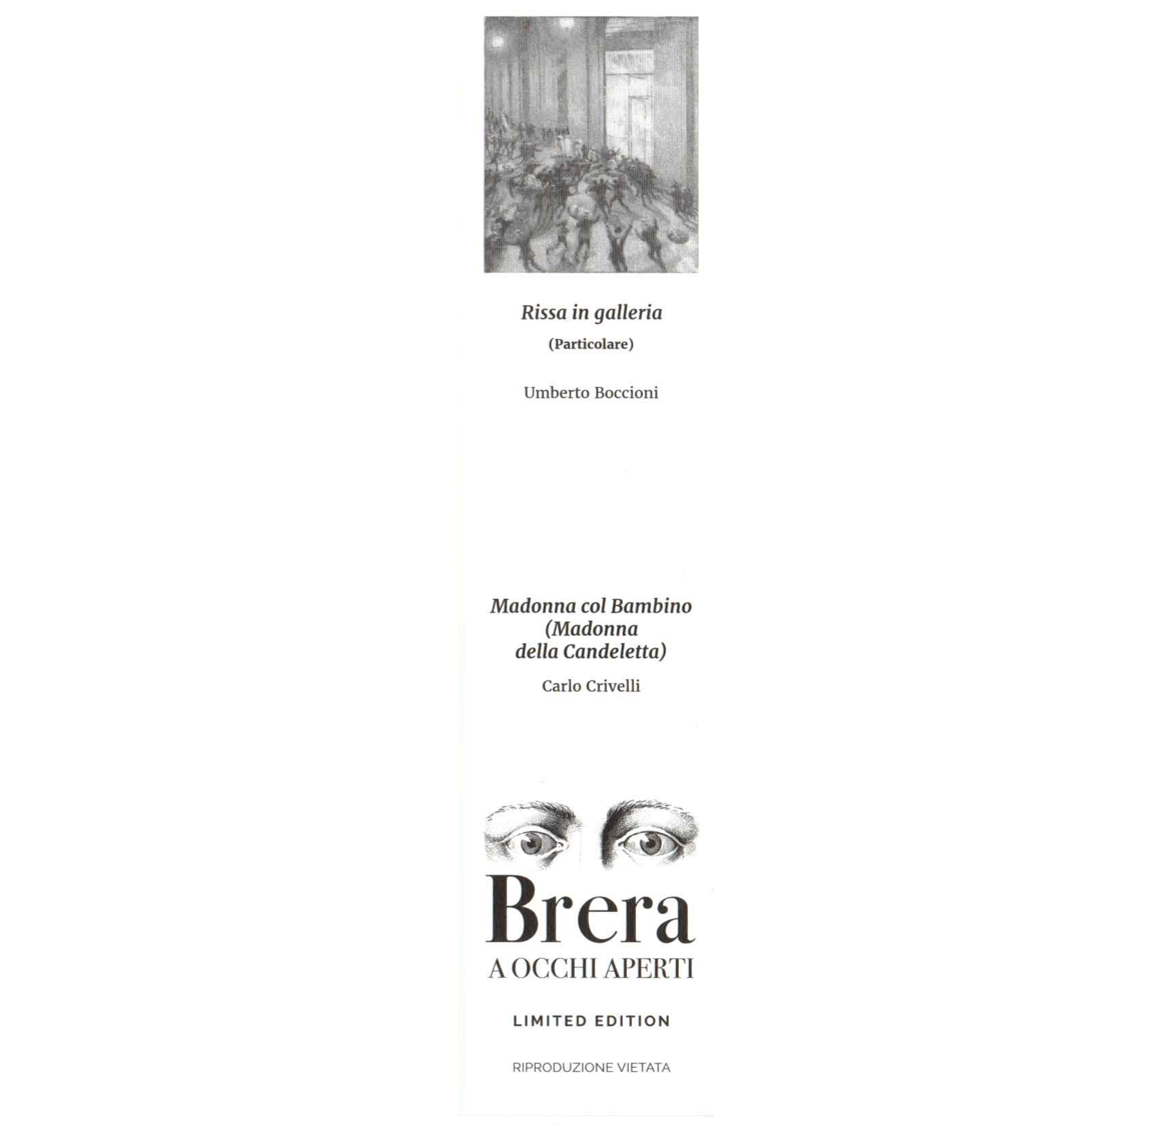 Segnalibro Rissa in galleria, Umberto Boccioni - Bottega Brera 